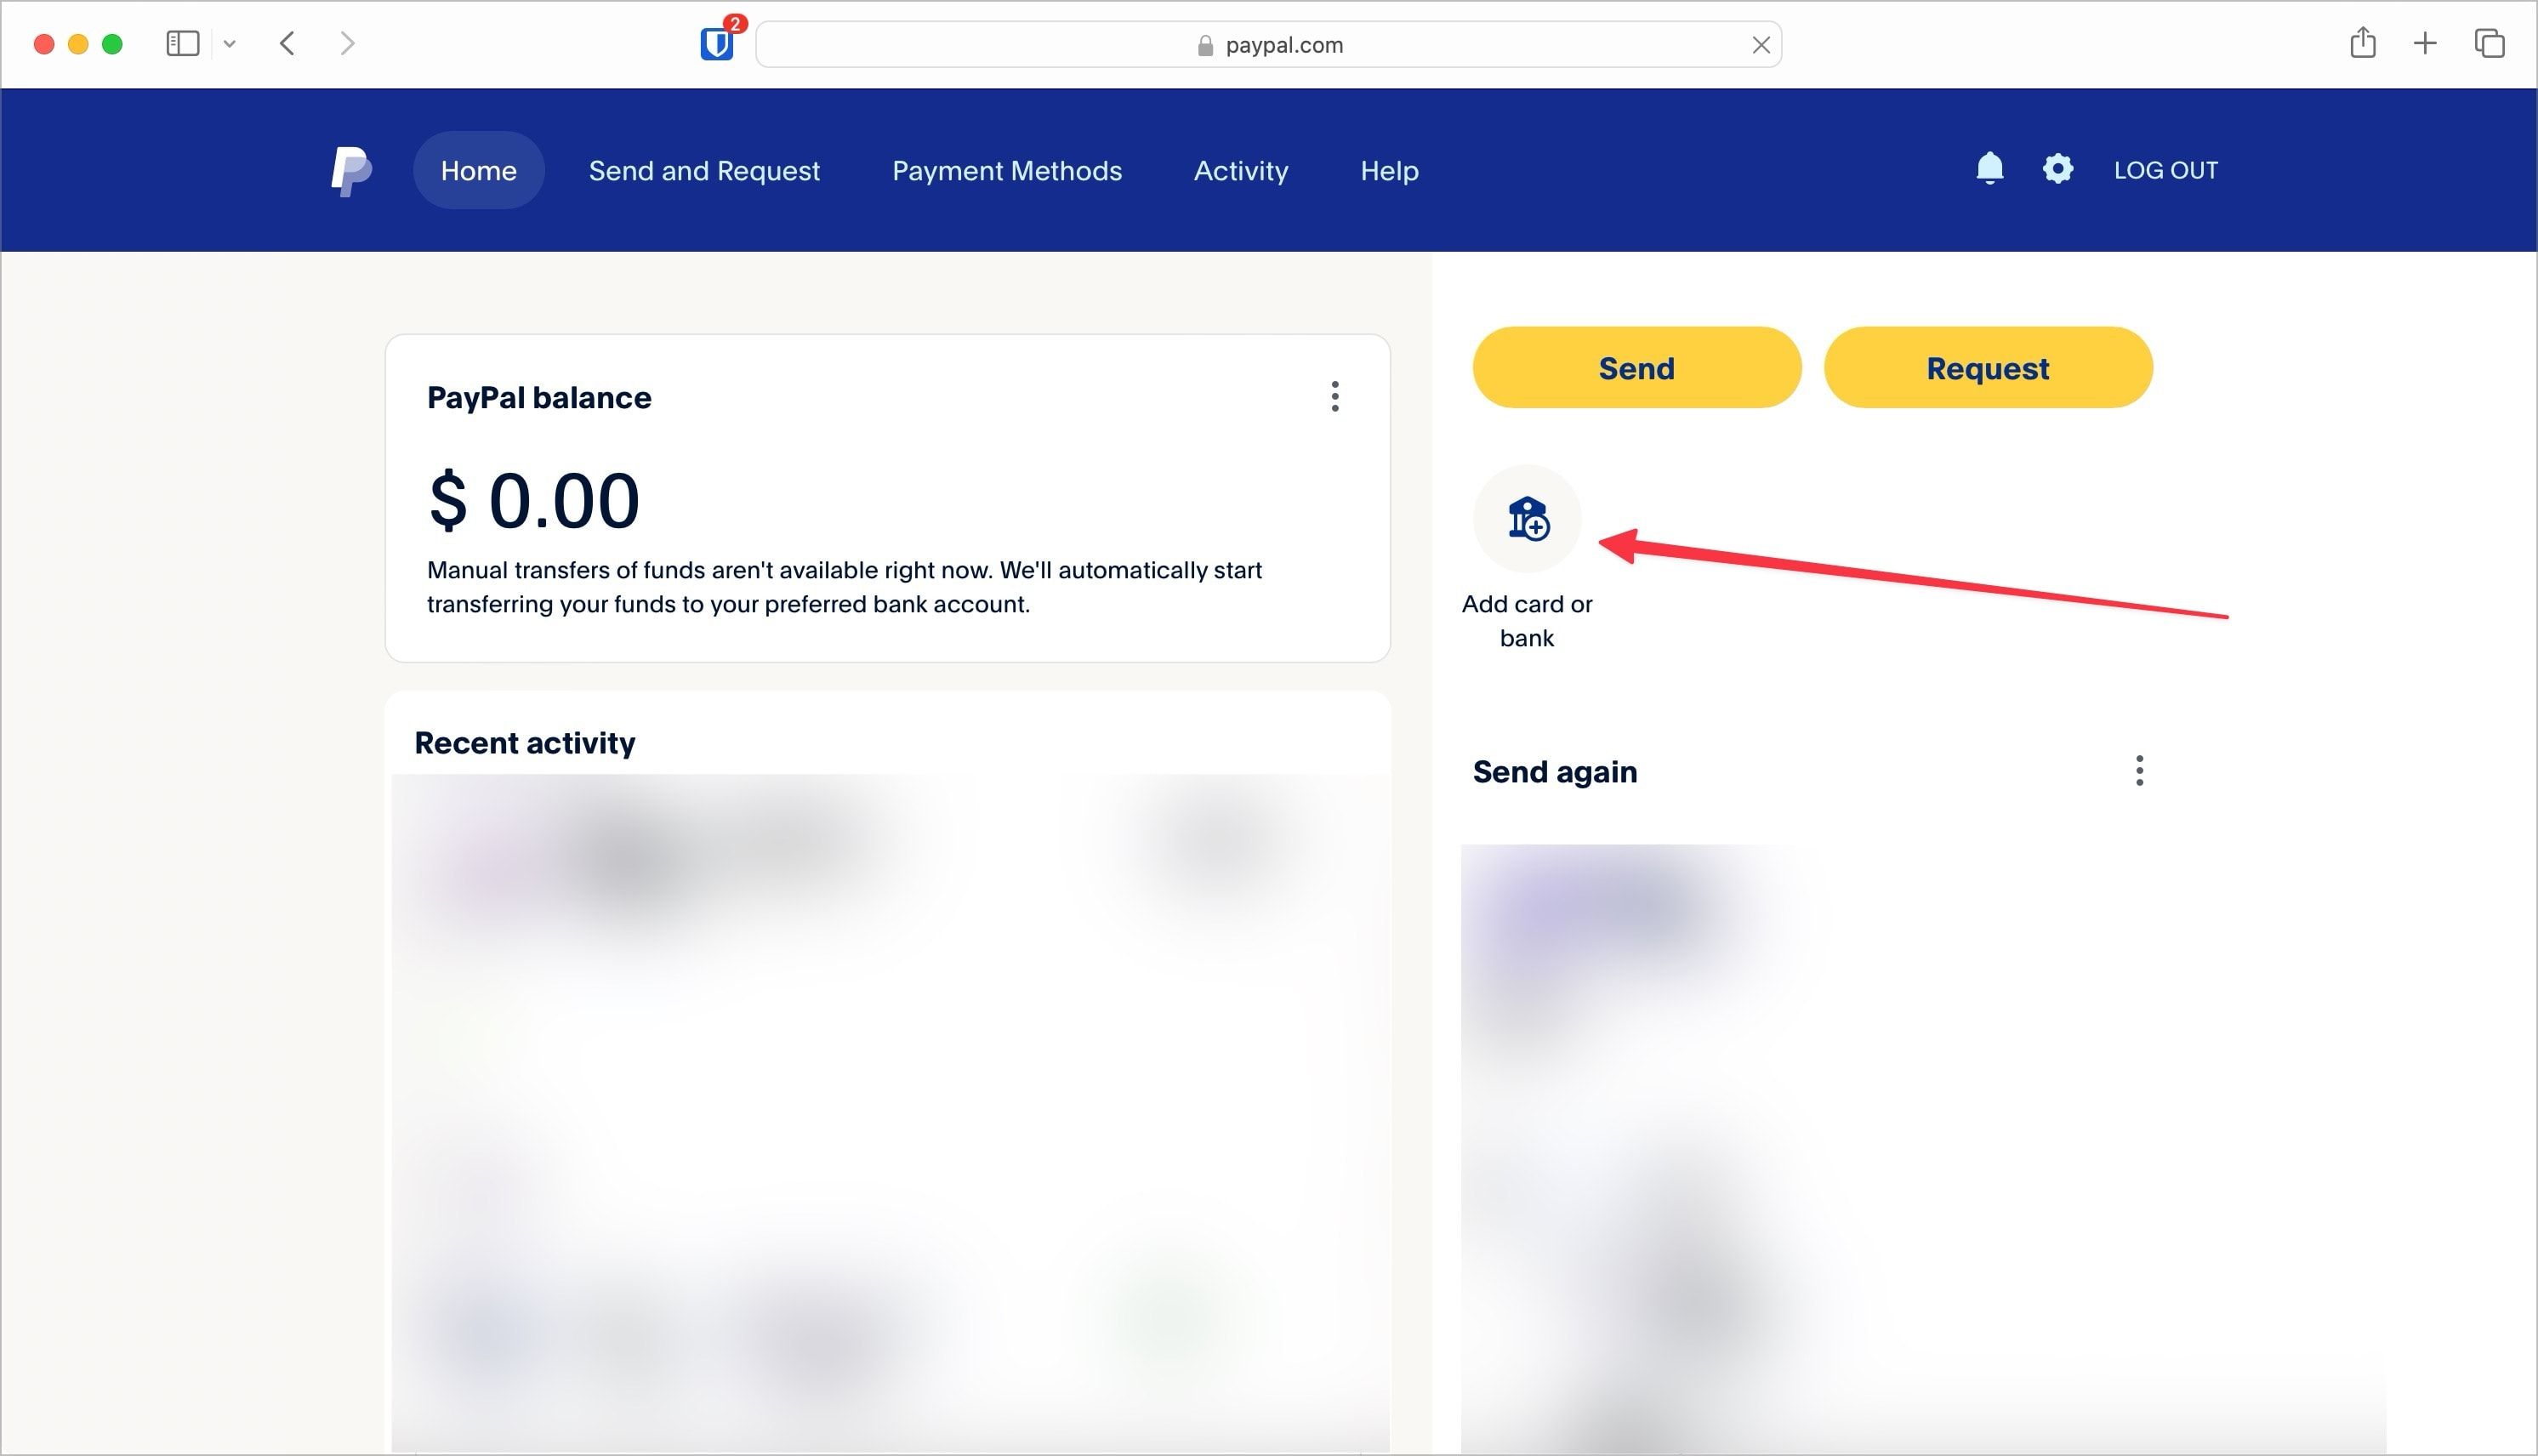 Captura de tela da página inicial do PayPal mostrando o botão adicionar banco ou cartão